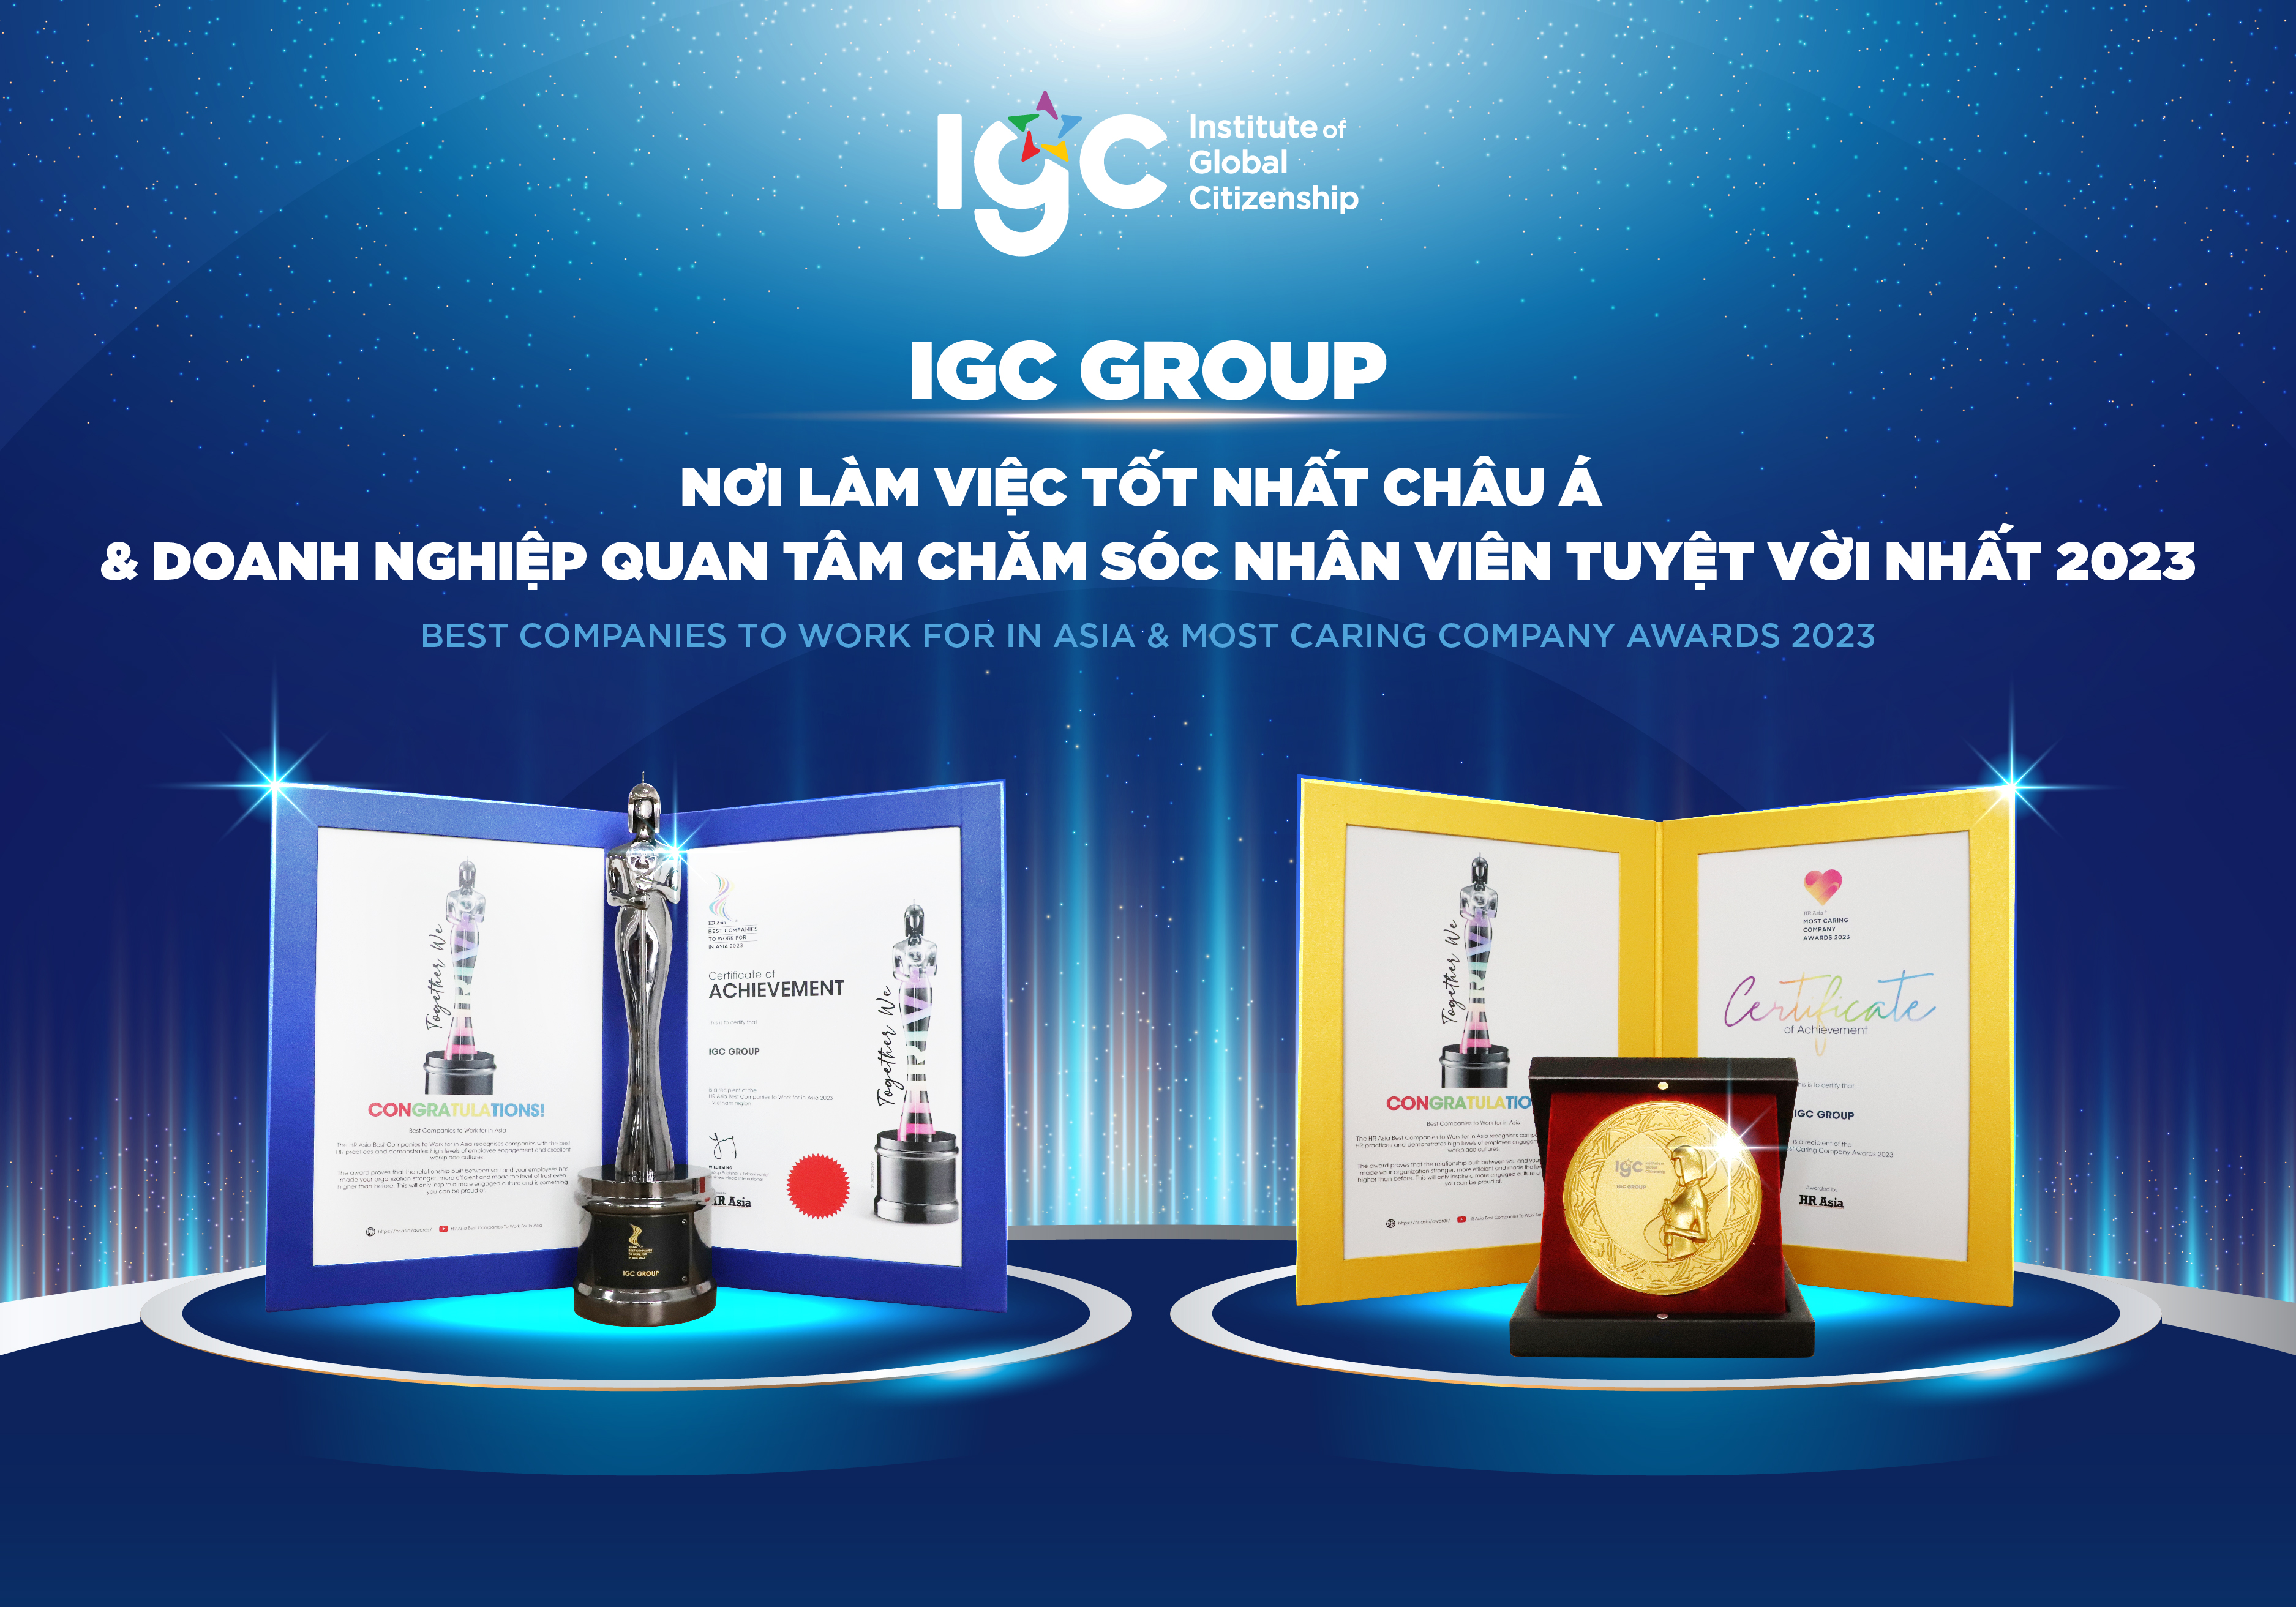 IGC Group đạt cú đúp giải thưởng Nơi làm việc tốt nhất Châu Á và Doanh nghiệp quan tâm chăm sóc nhân viên tuyệt vời nhất 2023